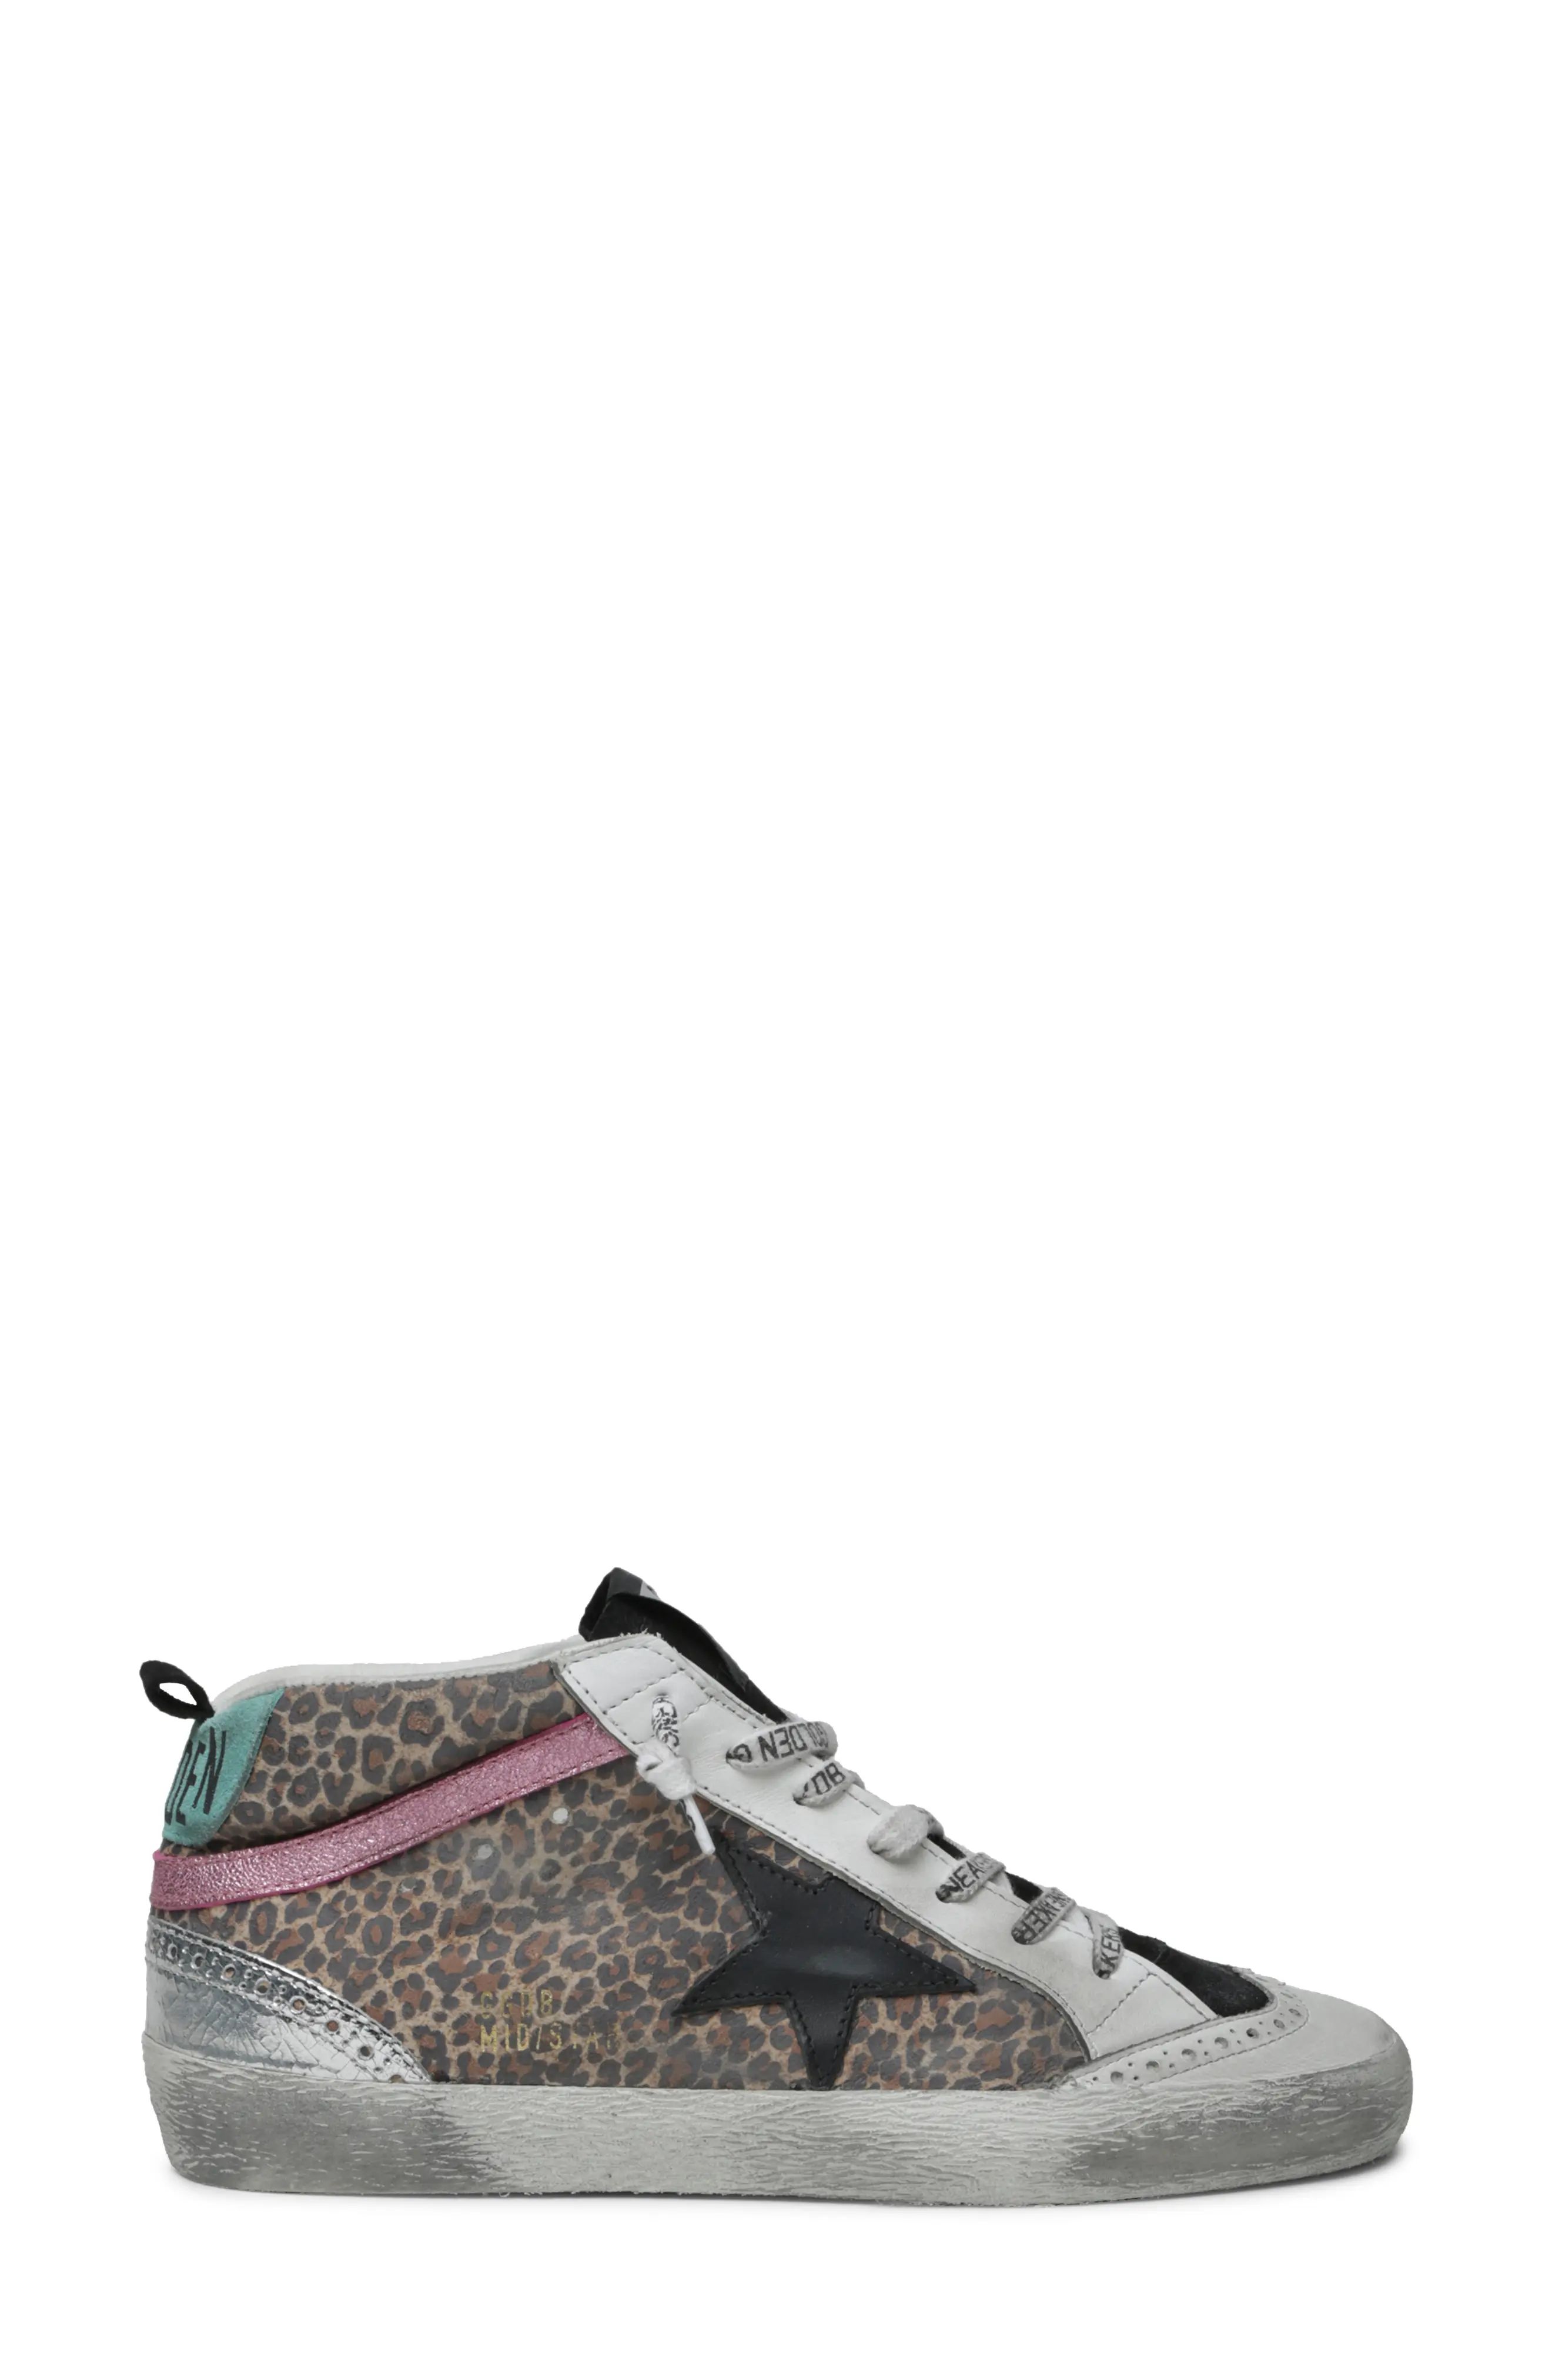 Women's Golden Goose Mid Star Leopard Print Sneaker, Size 7US - Beige | Nordstrom